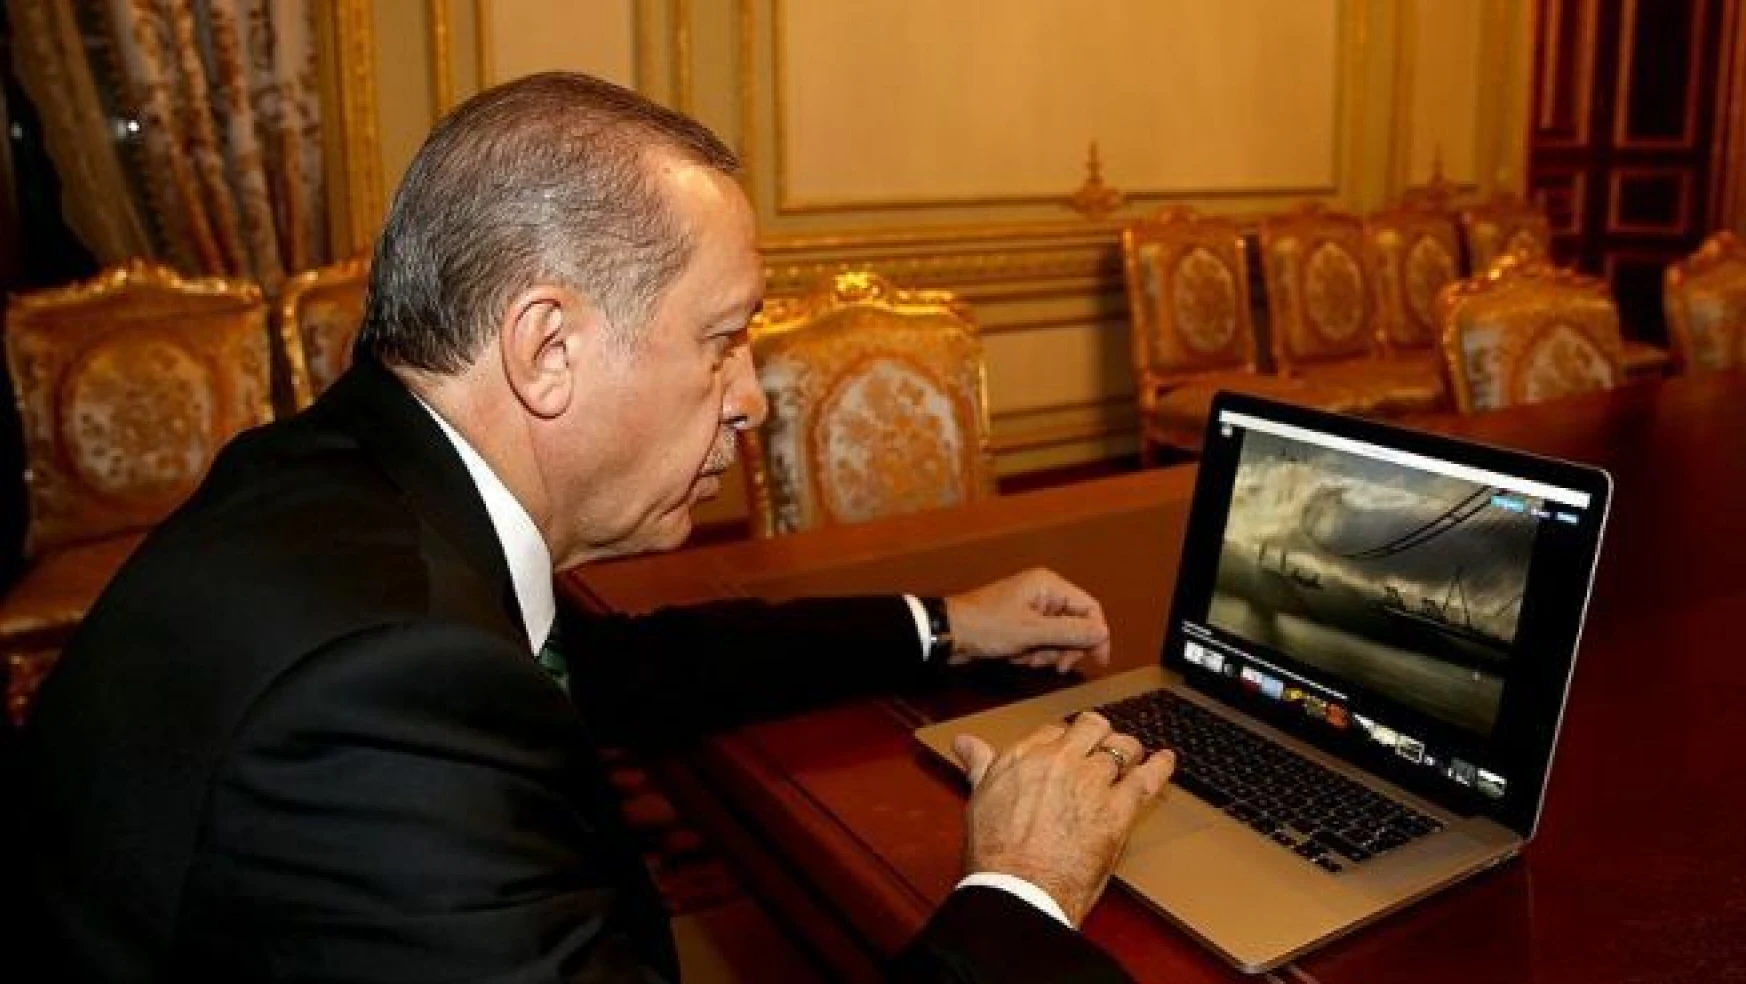 Erdoğan 2015 çekilmiş hangi fotoğrafları beğendi?